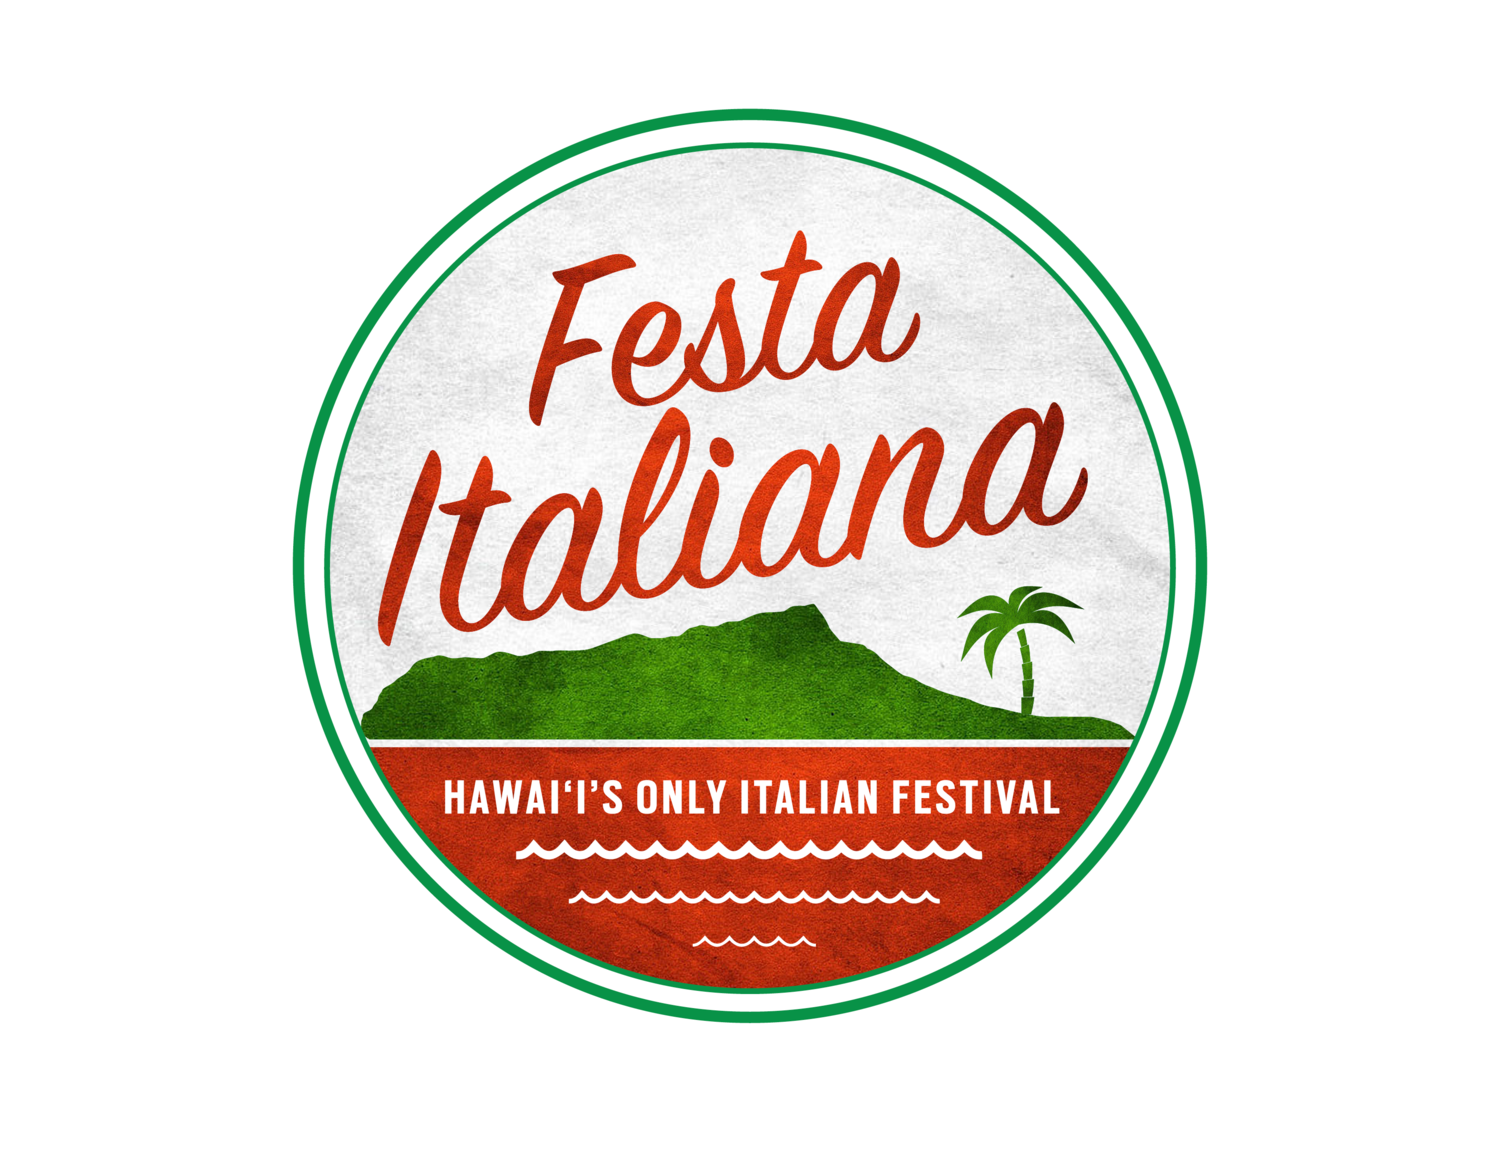 Festa Italiana Hawaii